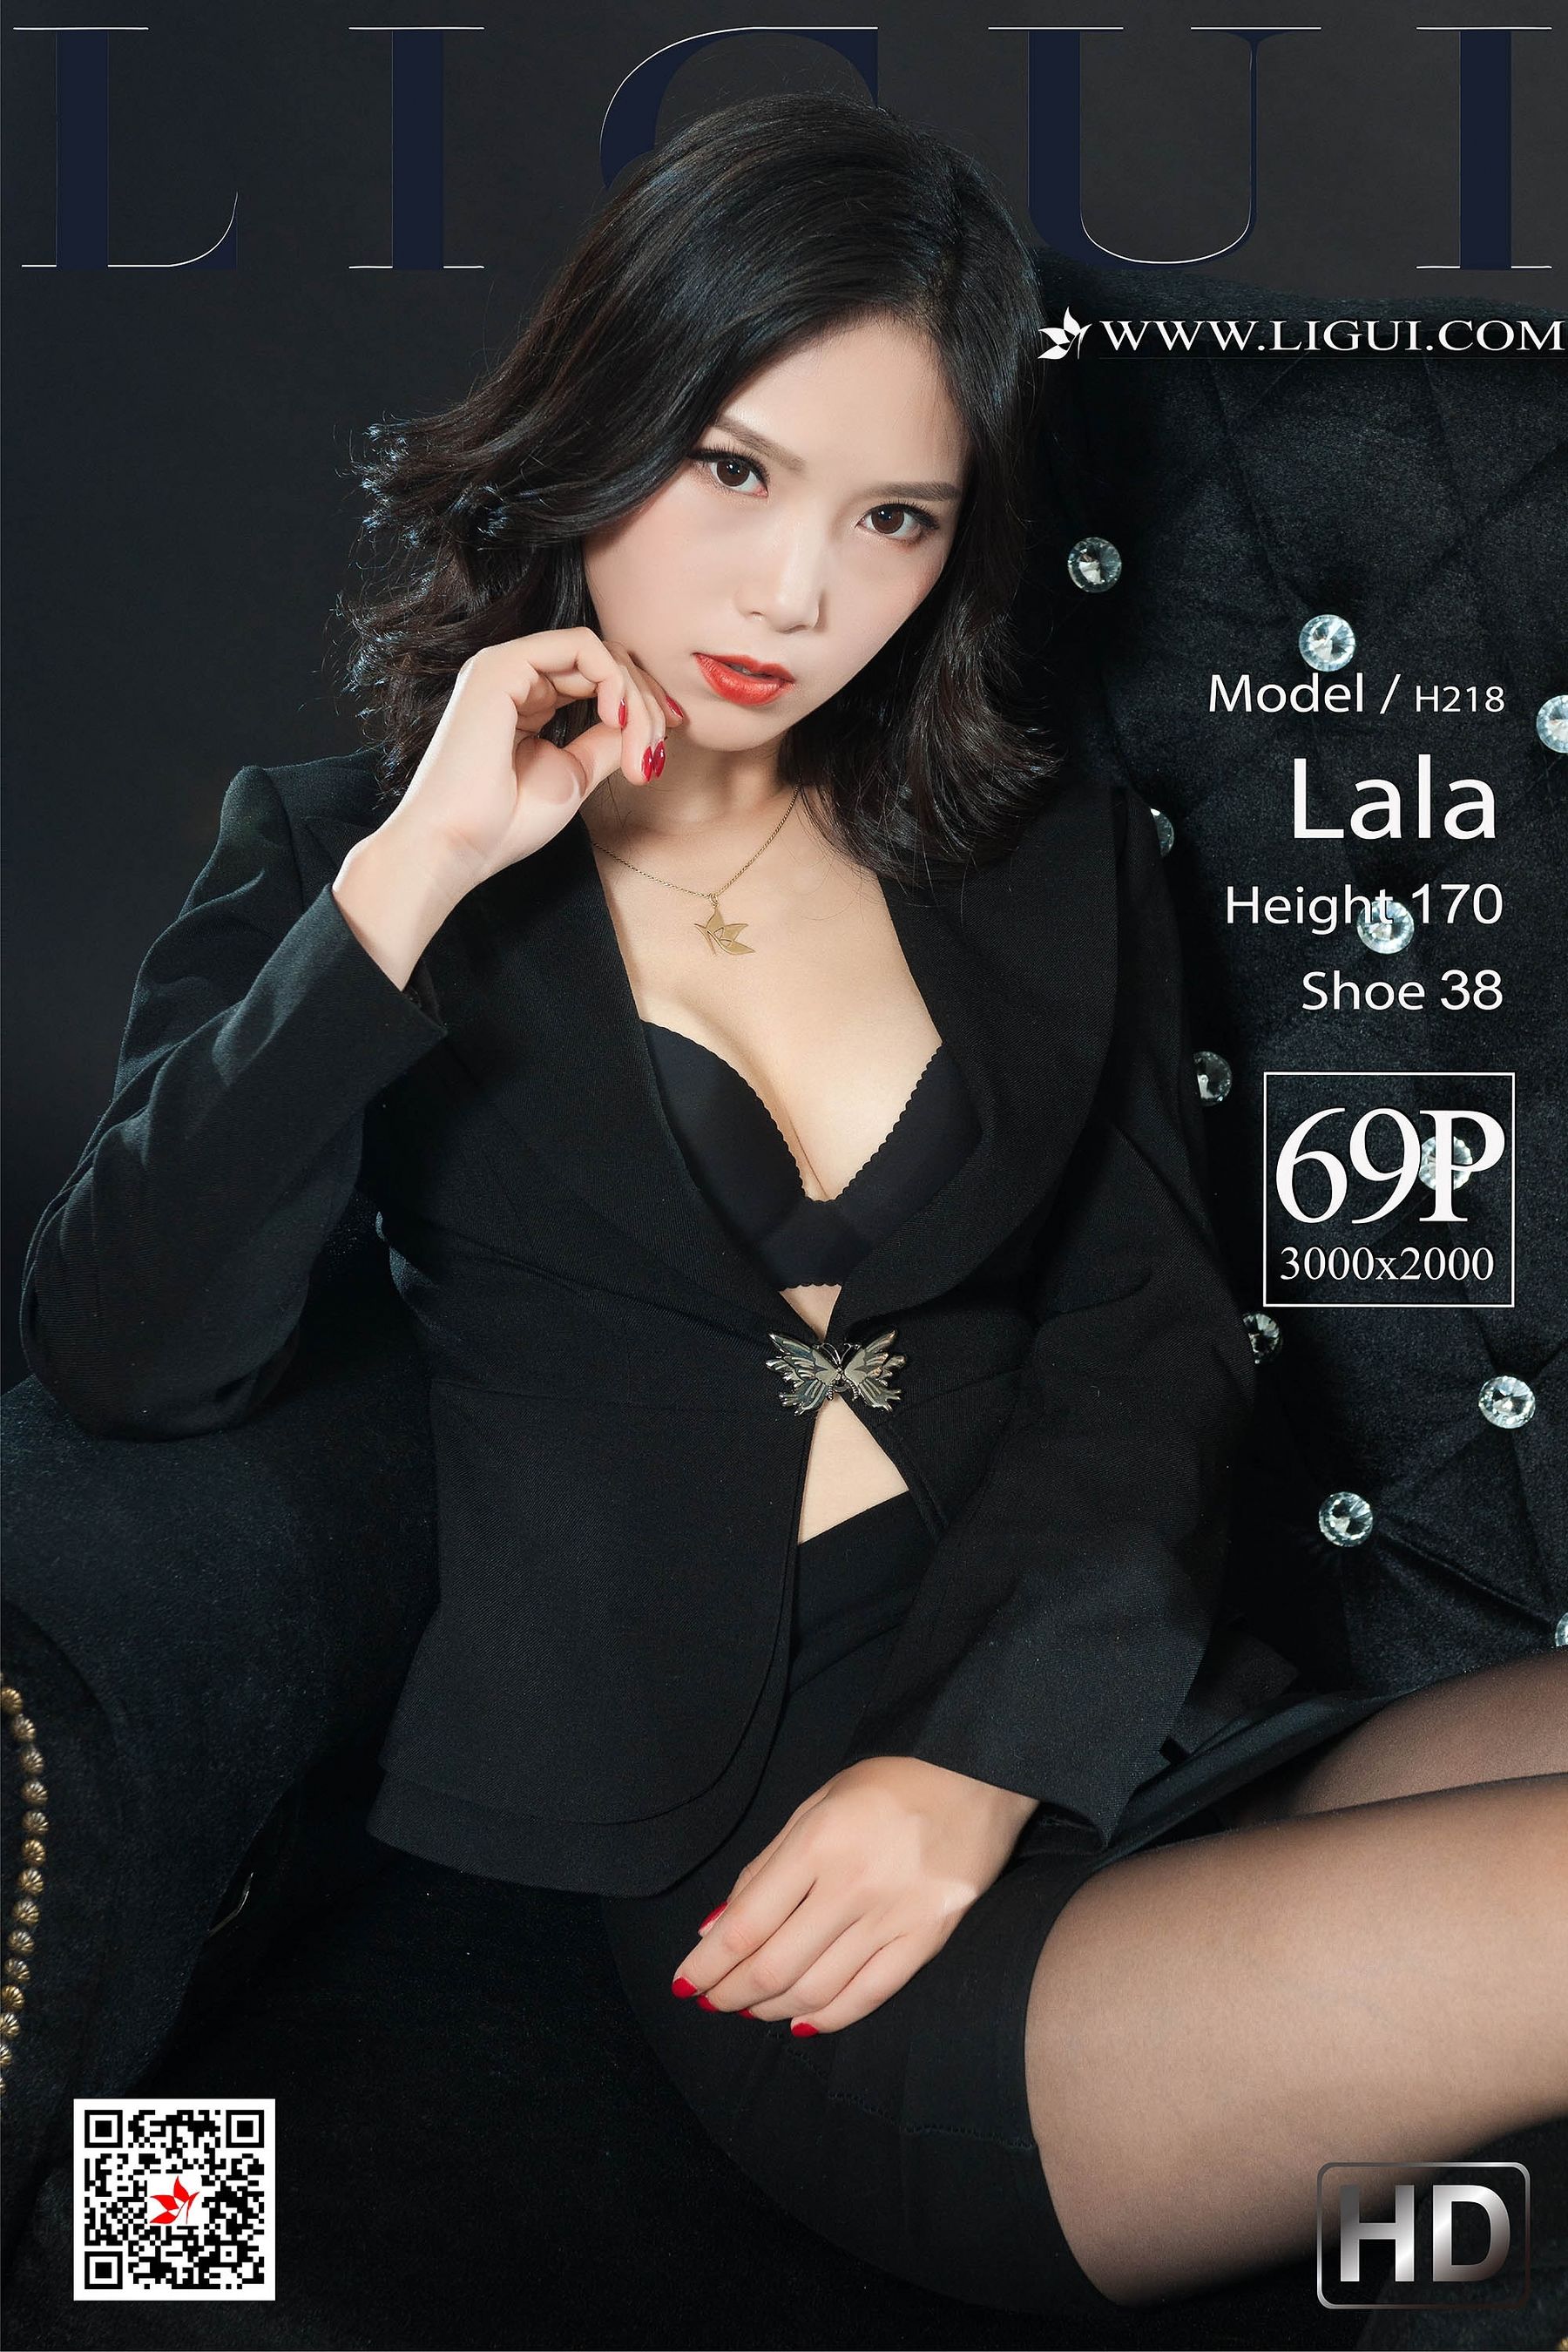 [丽柜Ligui] 网络丽人 Model Lala  第74张